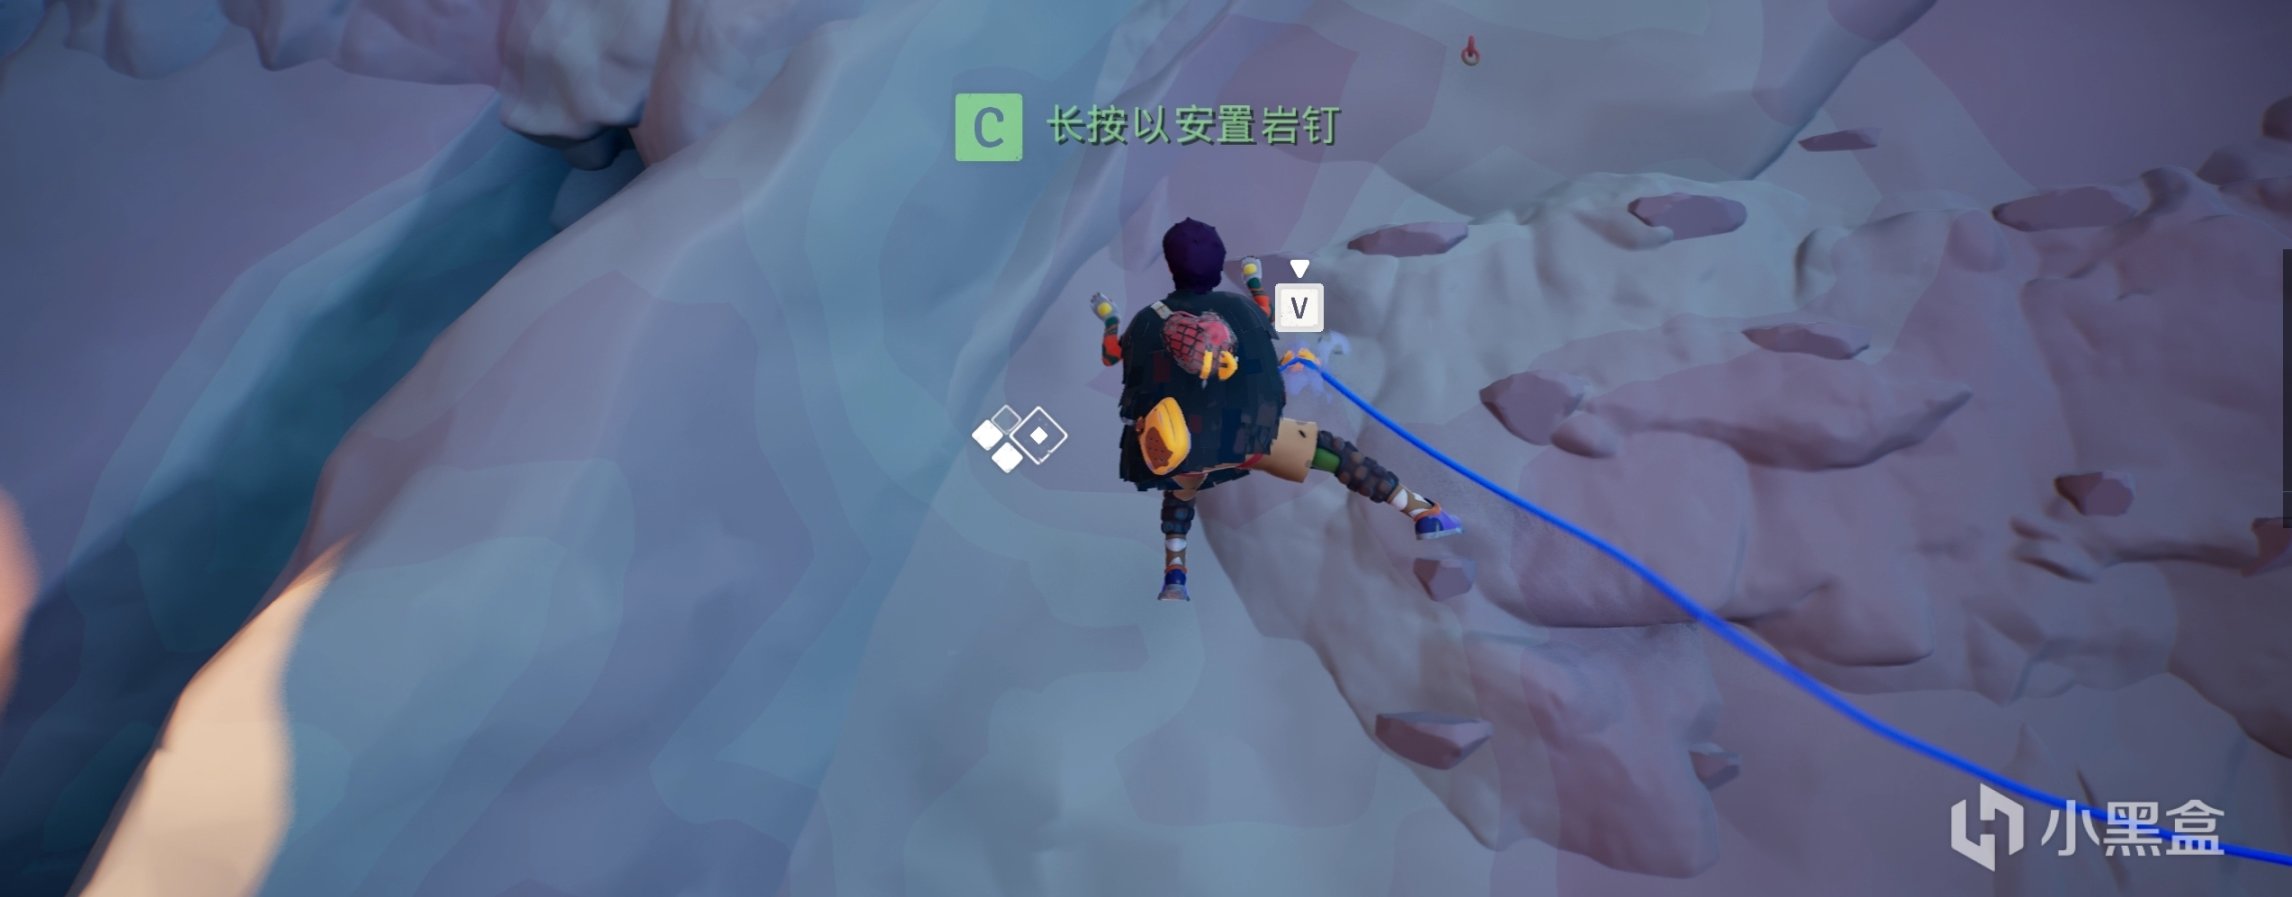 【PC游戏】新品攀岩冒险游戏Jusant体验 超治愈画风-第6张